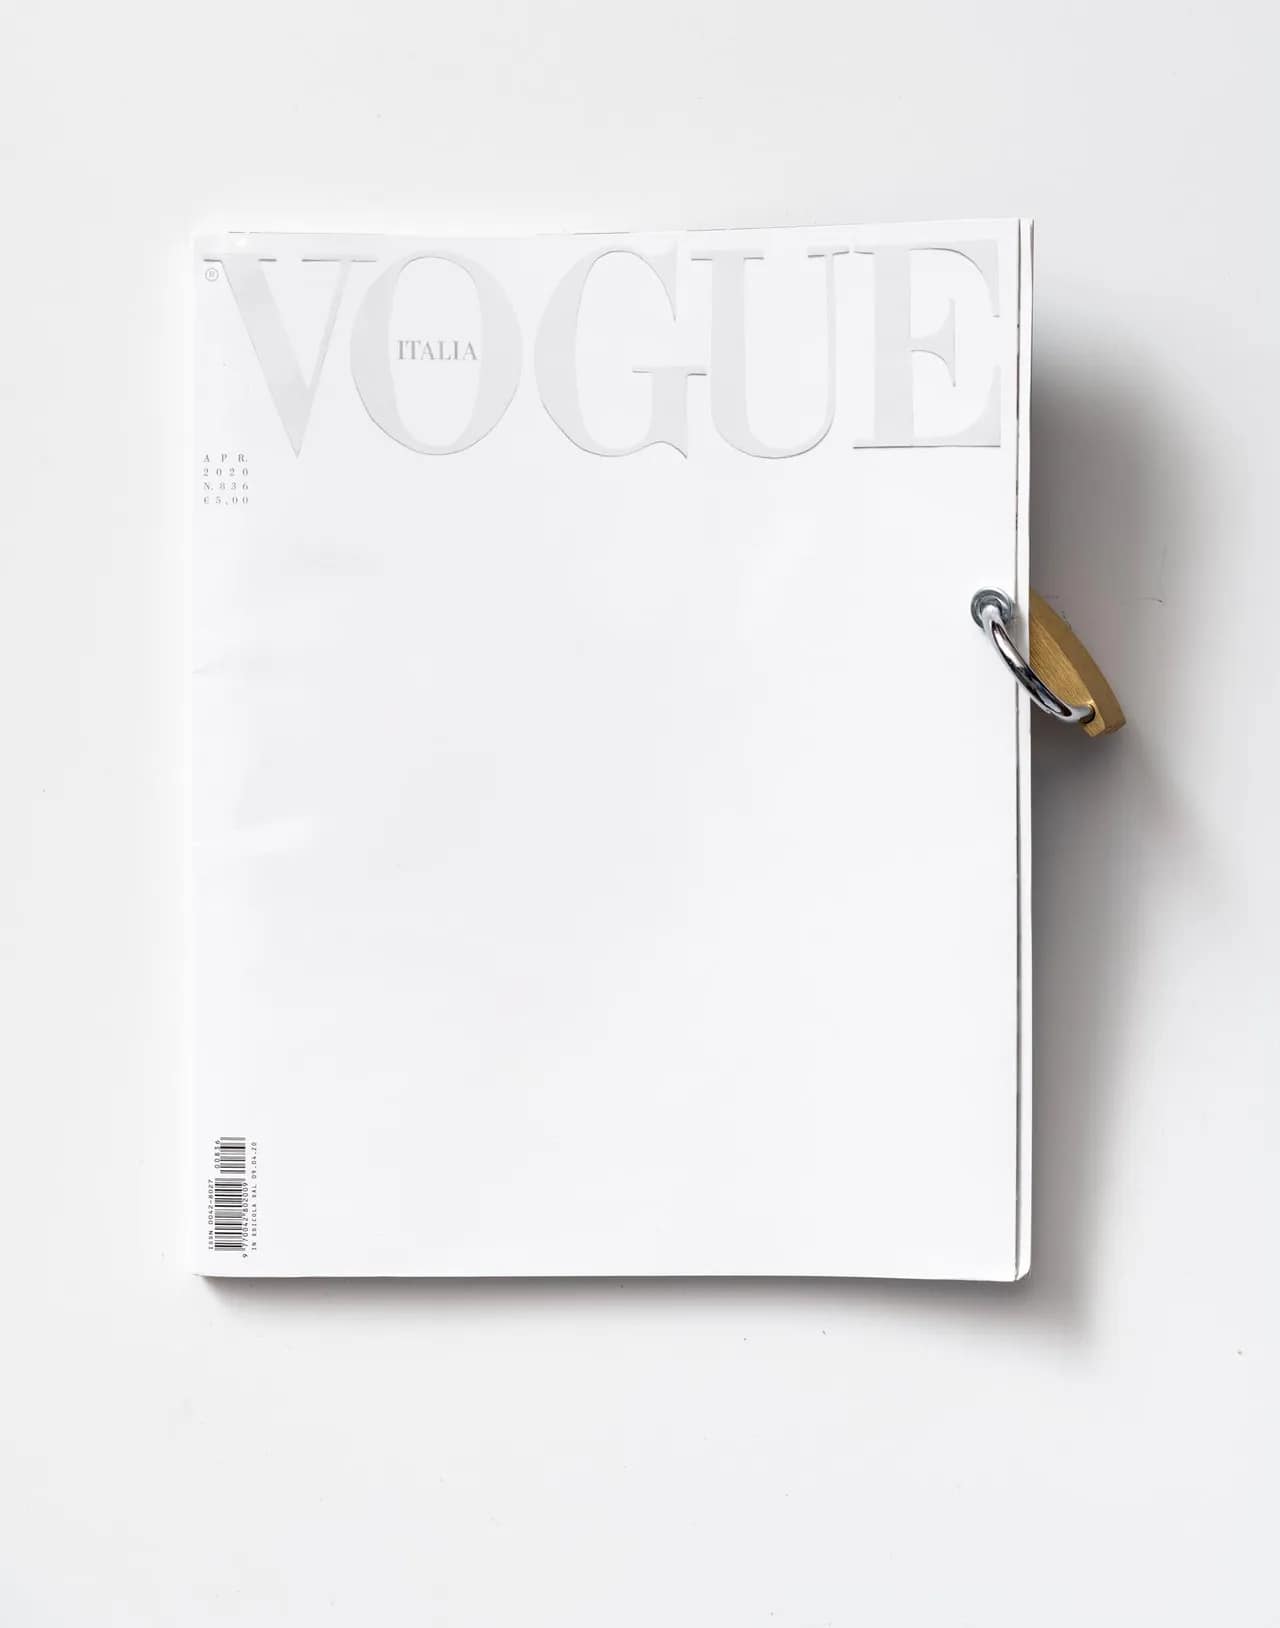 Trên nền tảng là một tạp chí bìa trắng, các nghệ sĩ đã bắt tay vào hành động để sáng tạo nên những cuốn tạp chí với bìa là những tác phẩm nghệ thuật đích thực.